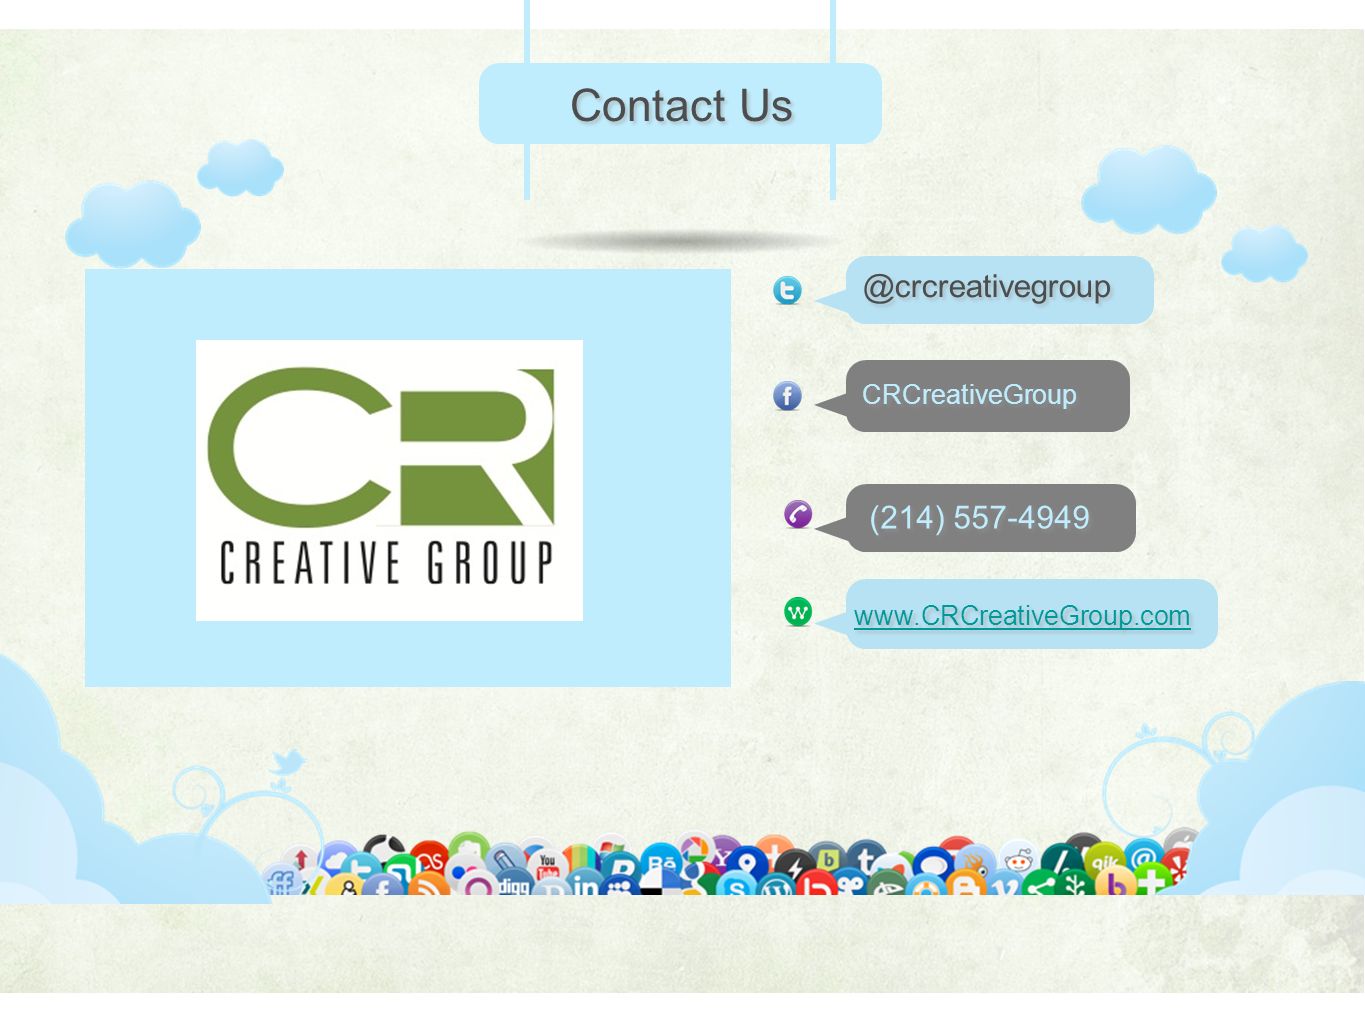 (214) CRCreativeGroup Contact